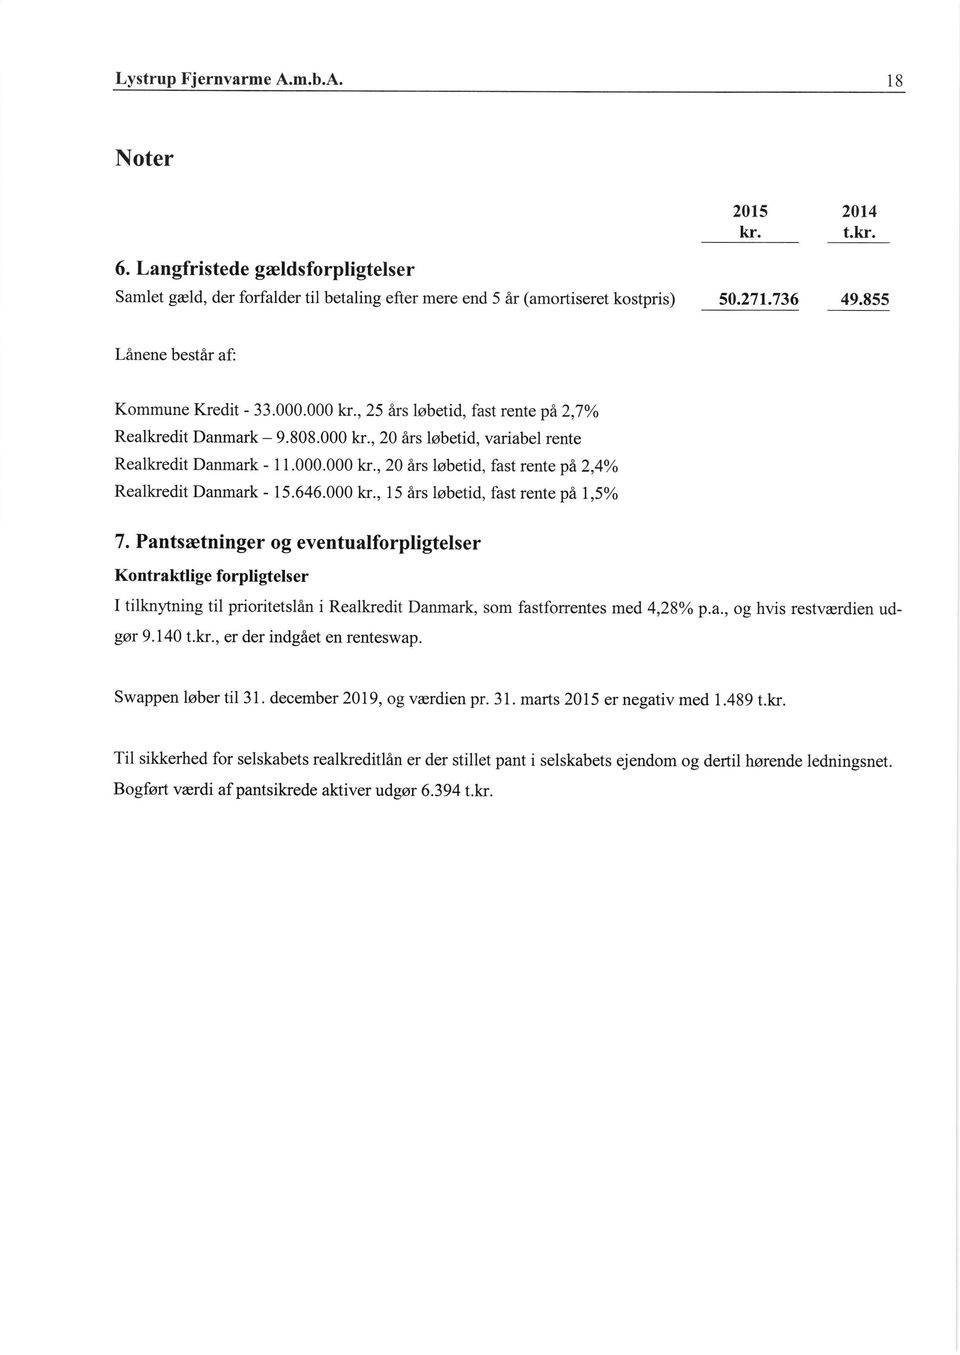 Pantsretninger og eventualforpligtelser Kontraktlige forpligtelser I tilknytning til prioritetslan i Realkredit Danmark, som fastforrentes med 4,28o/o p.a., og hvis restverdien udgar 9.